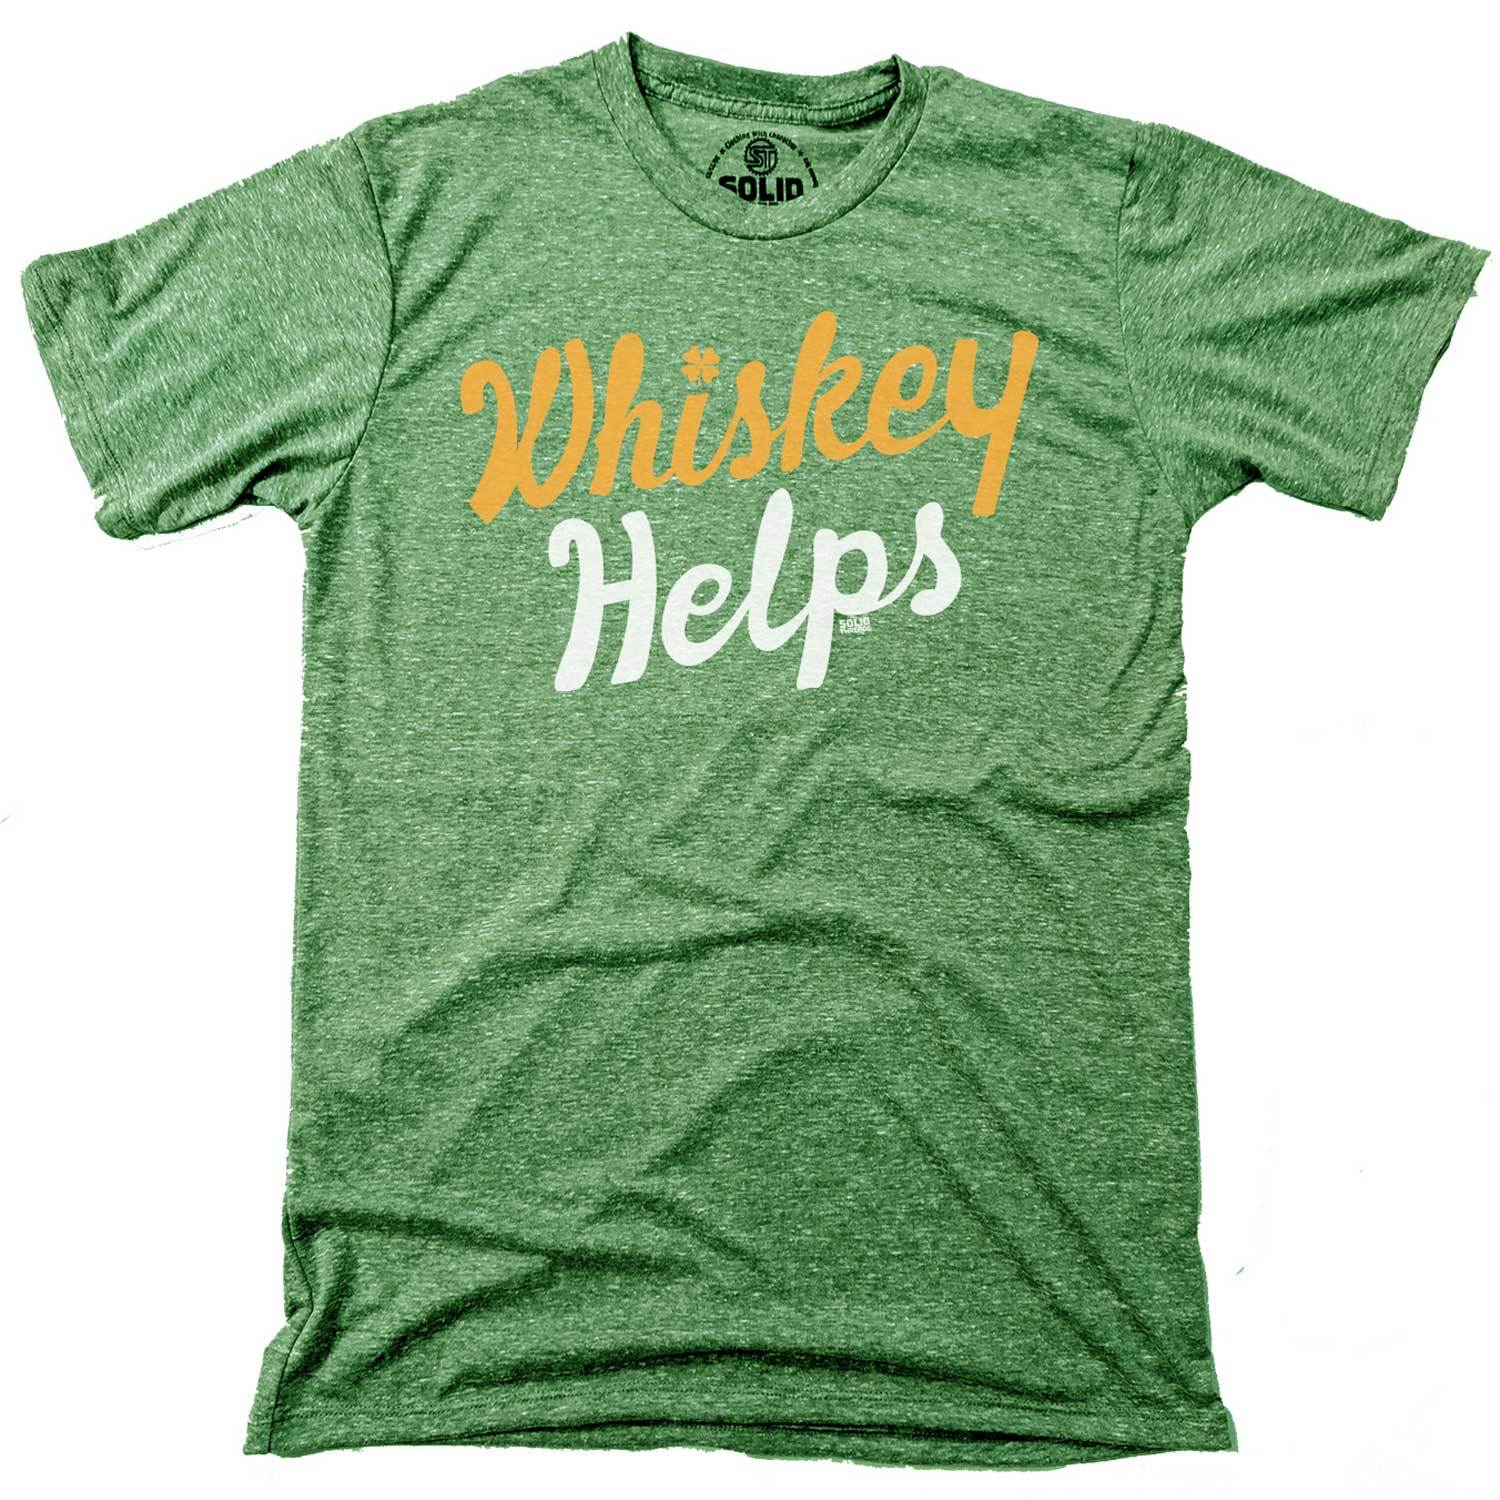 Irish Whiskey Helps T-shirt